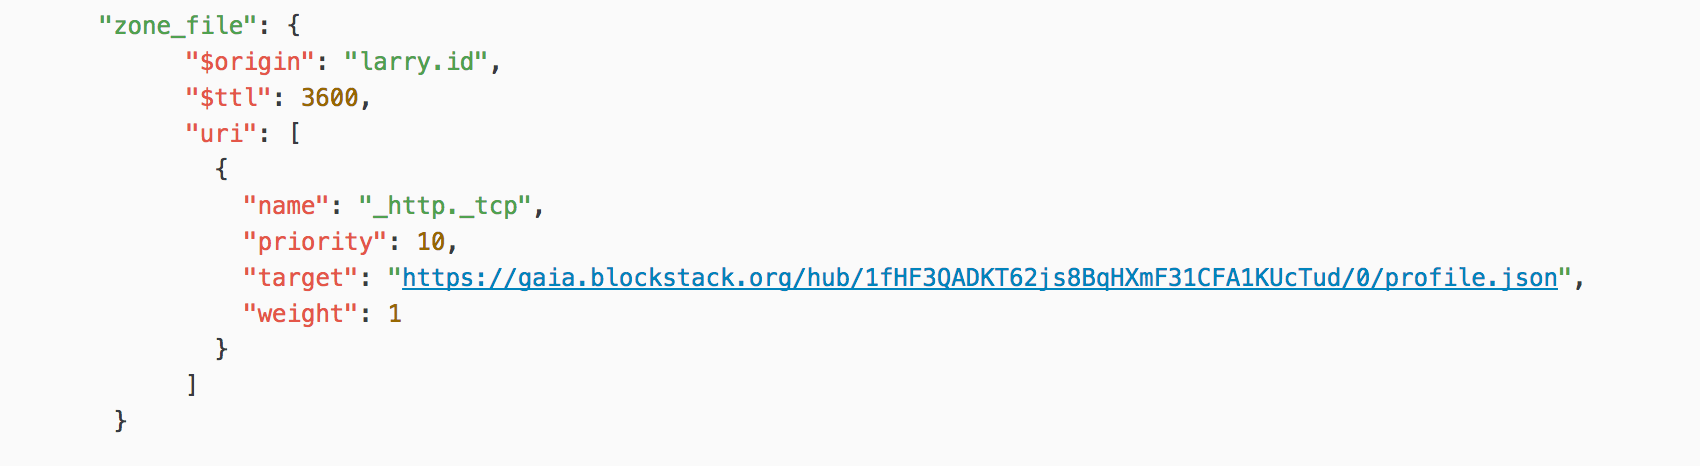 Blockstack zone file